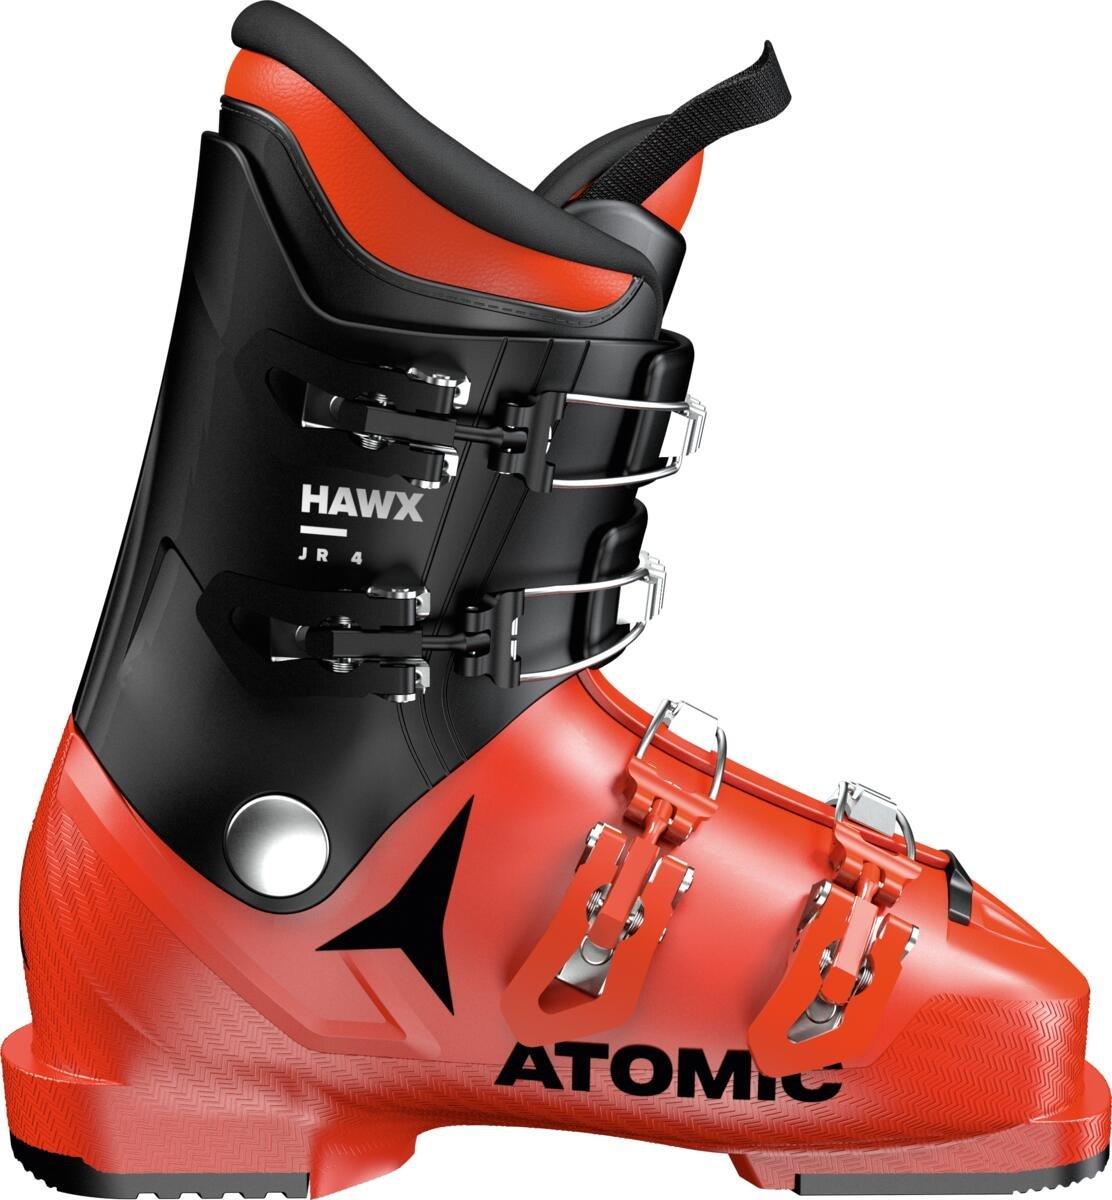 Detské lyžiarky Atomic Hawx 4 Junior Veľkosť: 24 cm